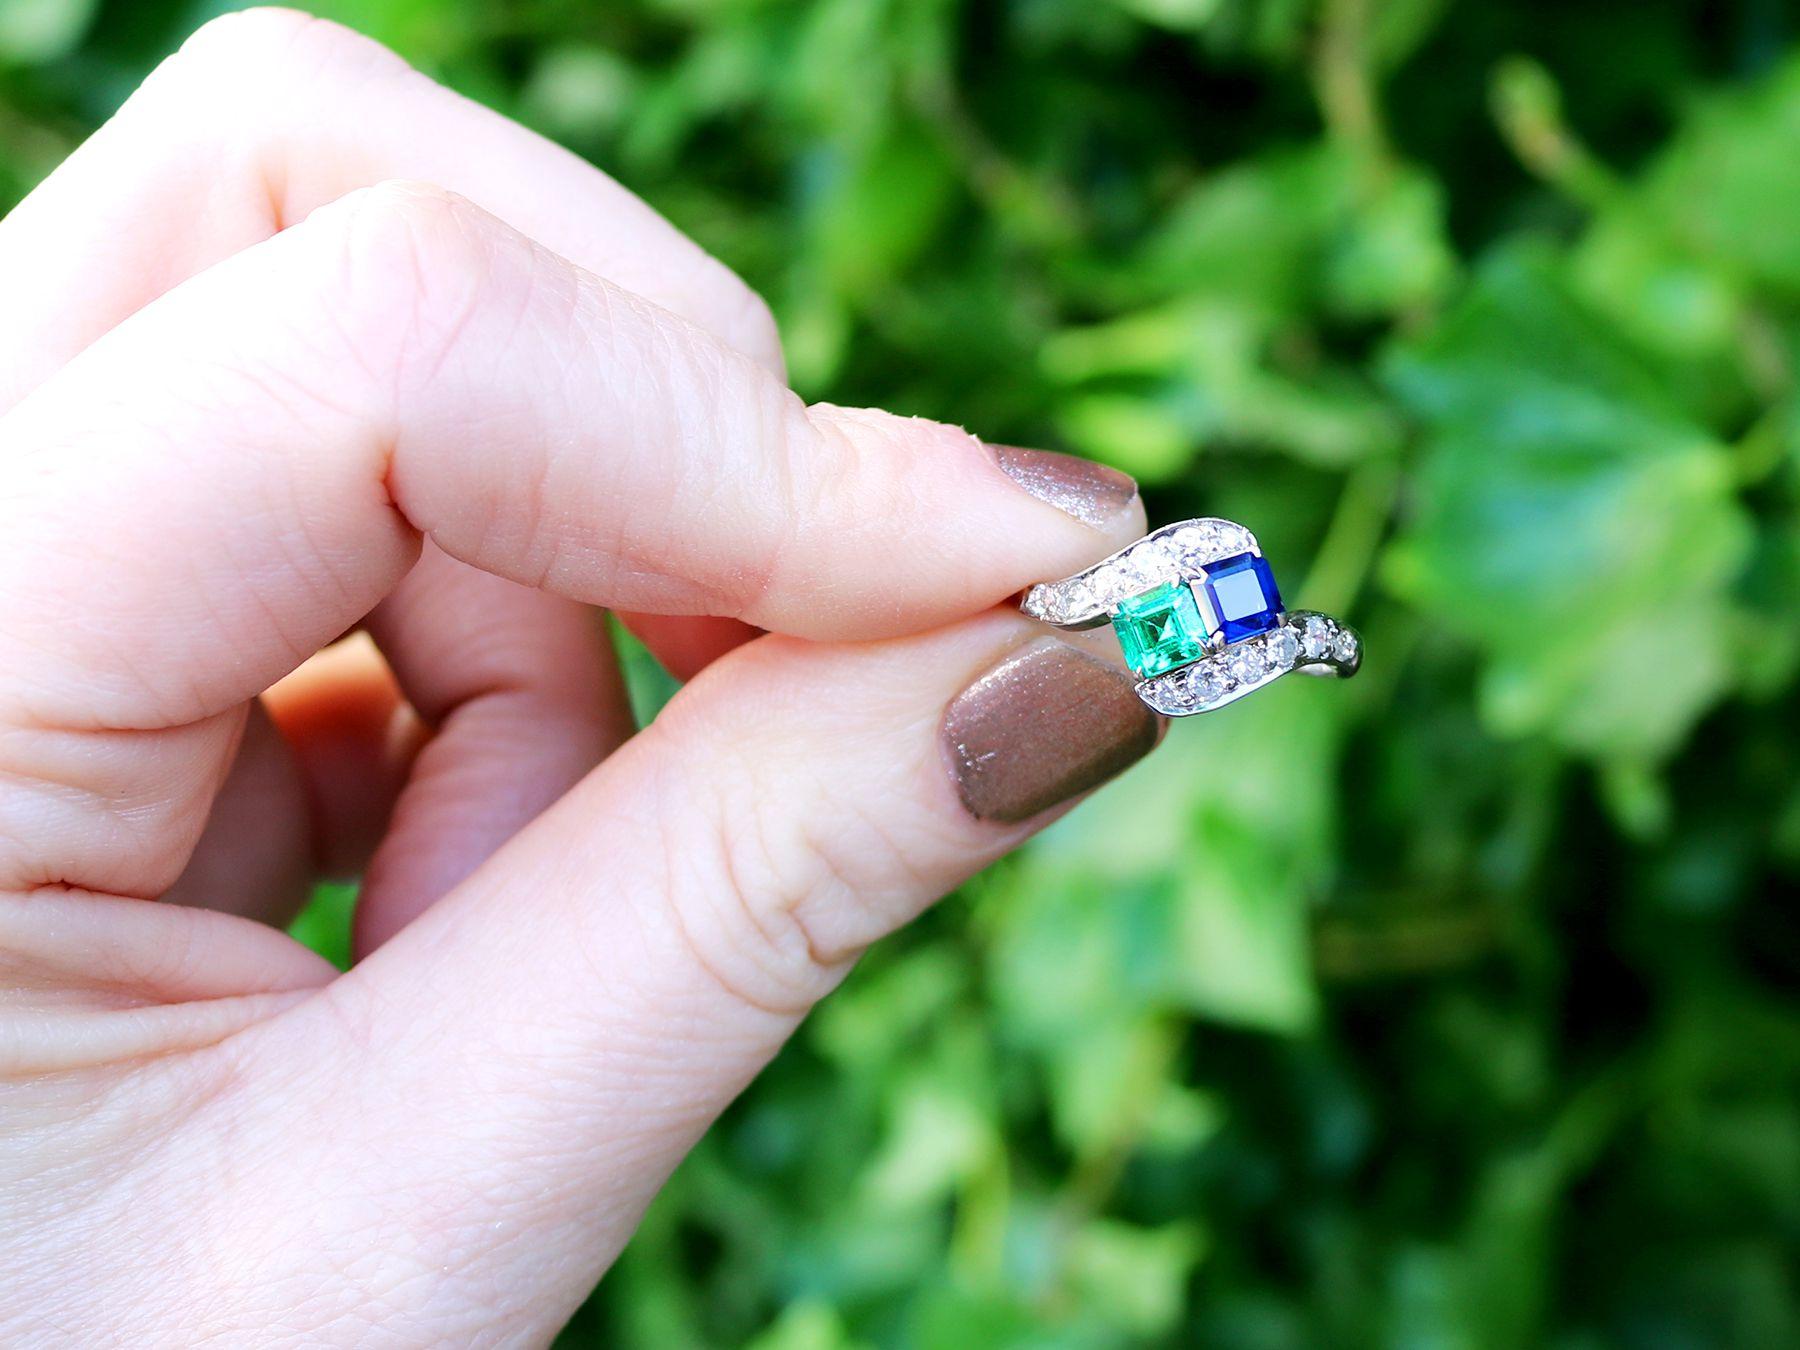 Ein beeindruckender Vintage-Ring mit einem Saphir von 0,47 Karat und einem Smaragd von 0,50 Karat, einem Diamanten von 0,77 Karat und einem Platin-Twistring; Teil unserer vielfältigen Edelsteinschmuck- und Nachlasskollektionen.

Dieser schöne und